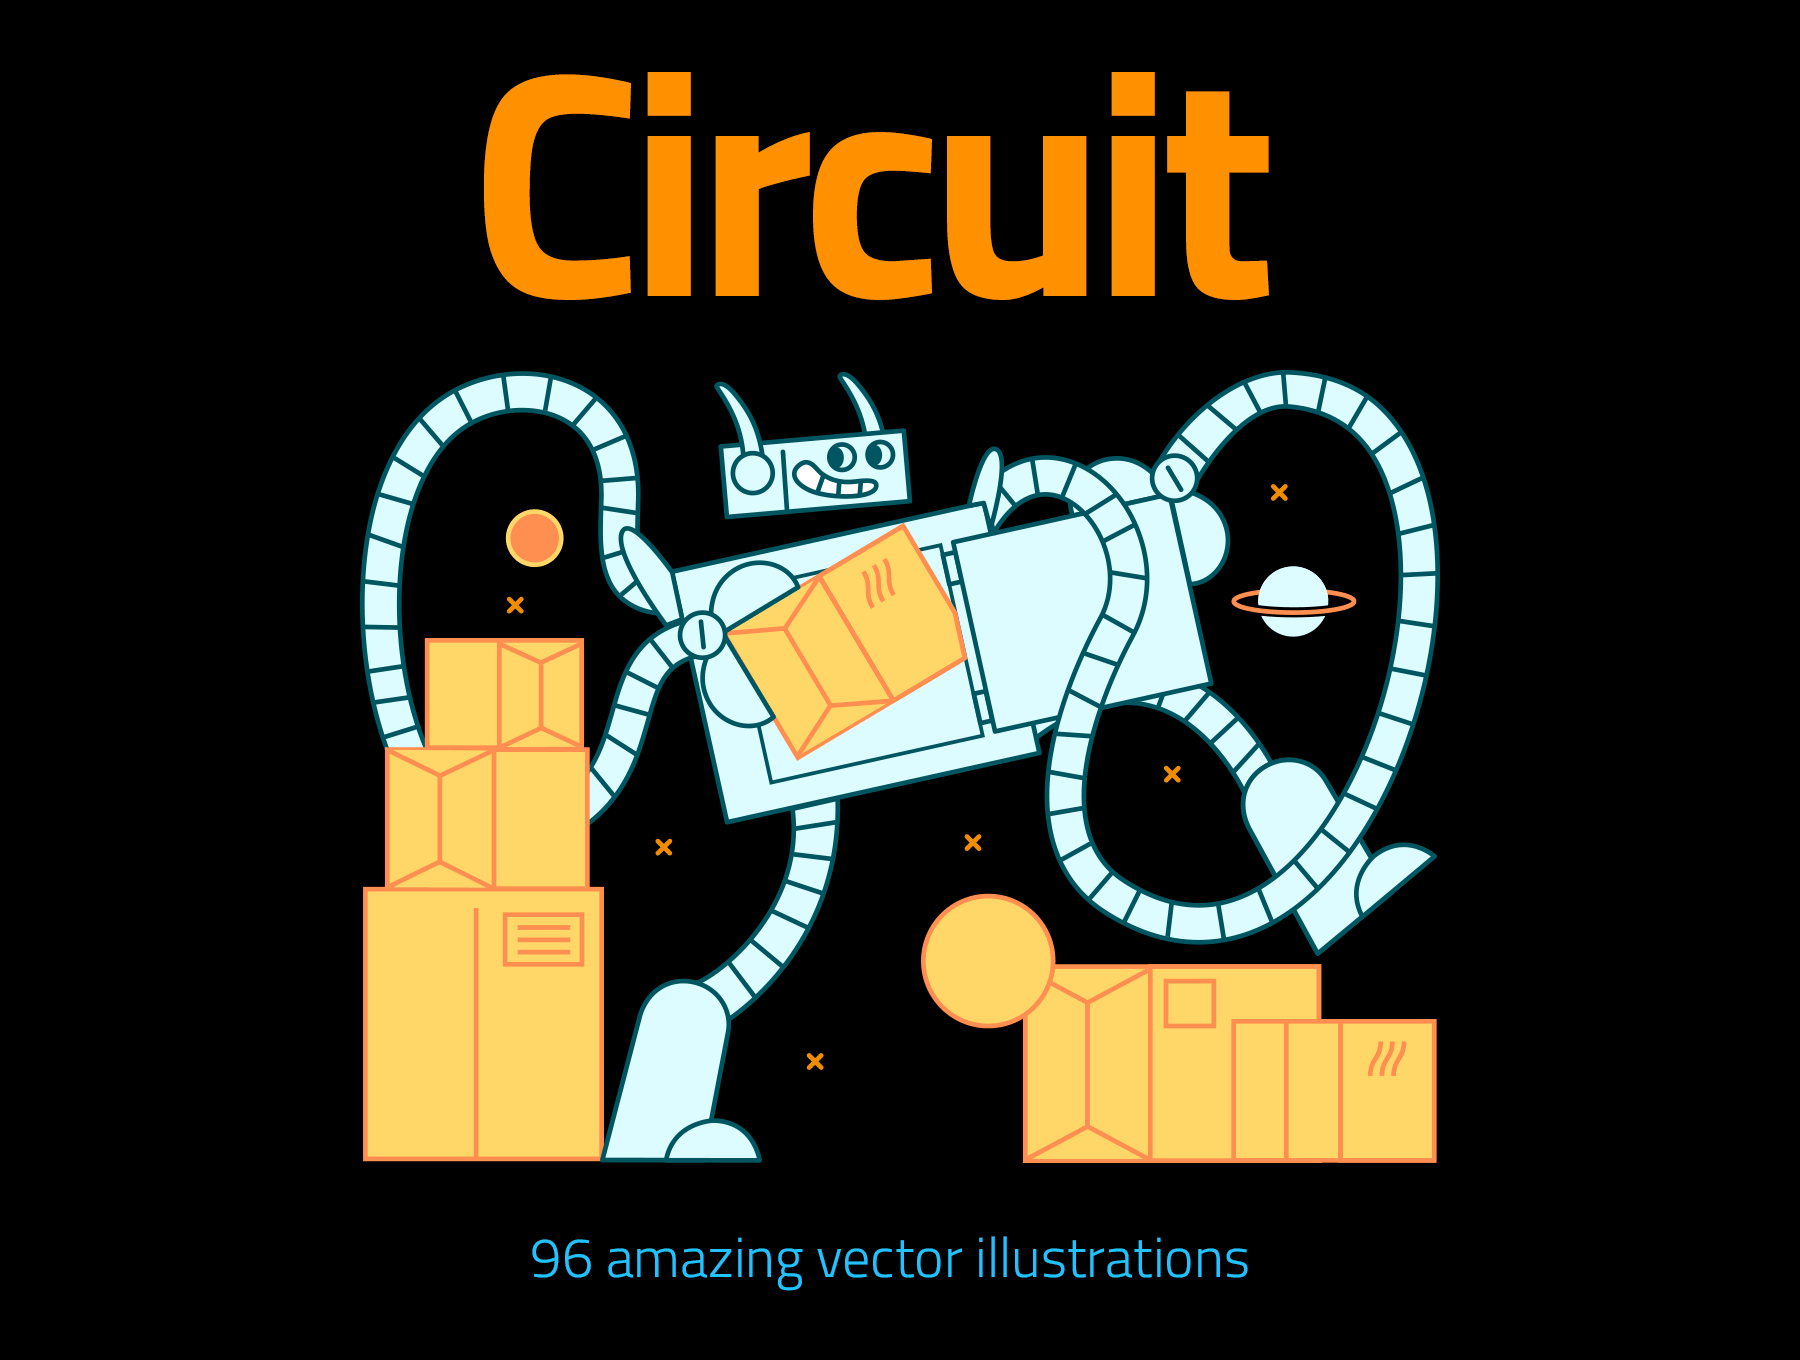 96款趣味机器人插画错误状态页配图素材 Circuit插图11